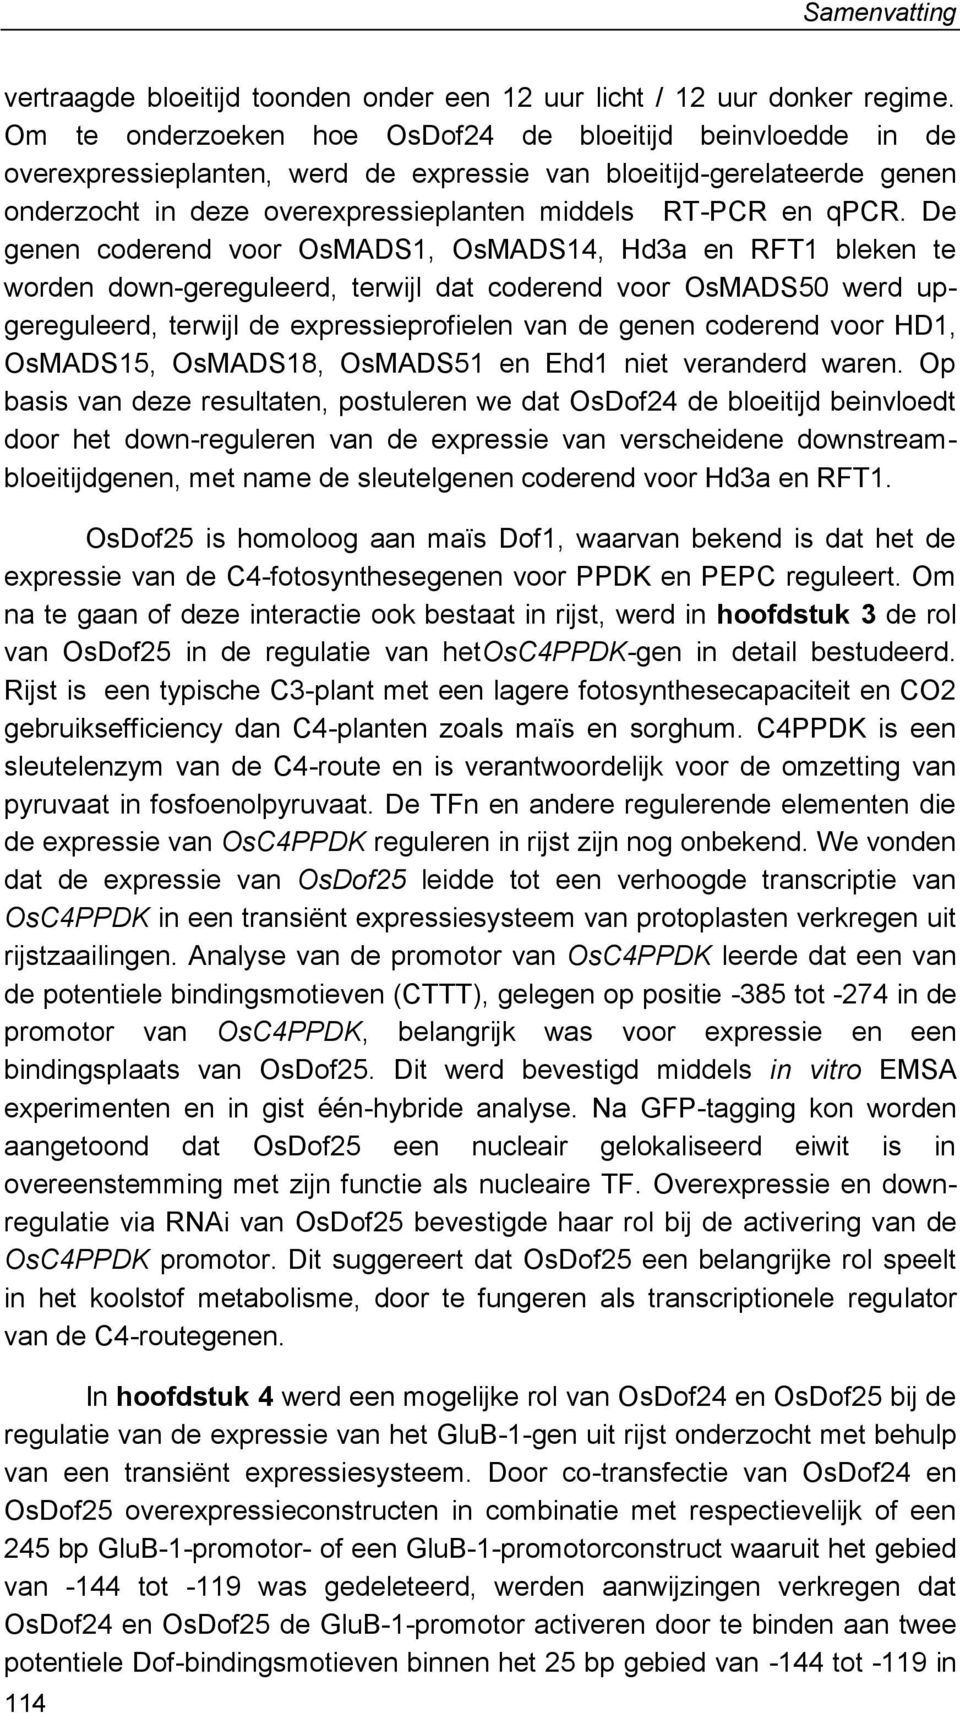 De genen coderend voor OsMADS1, OsMADS14, Hd3a en RFT1 bleken te worden down-gereguleerd, terwijl dat coderend voor OsMADS50 werd upgereguleerd, terwijl de expressieprofielen van de genen coderend